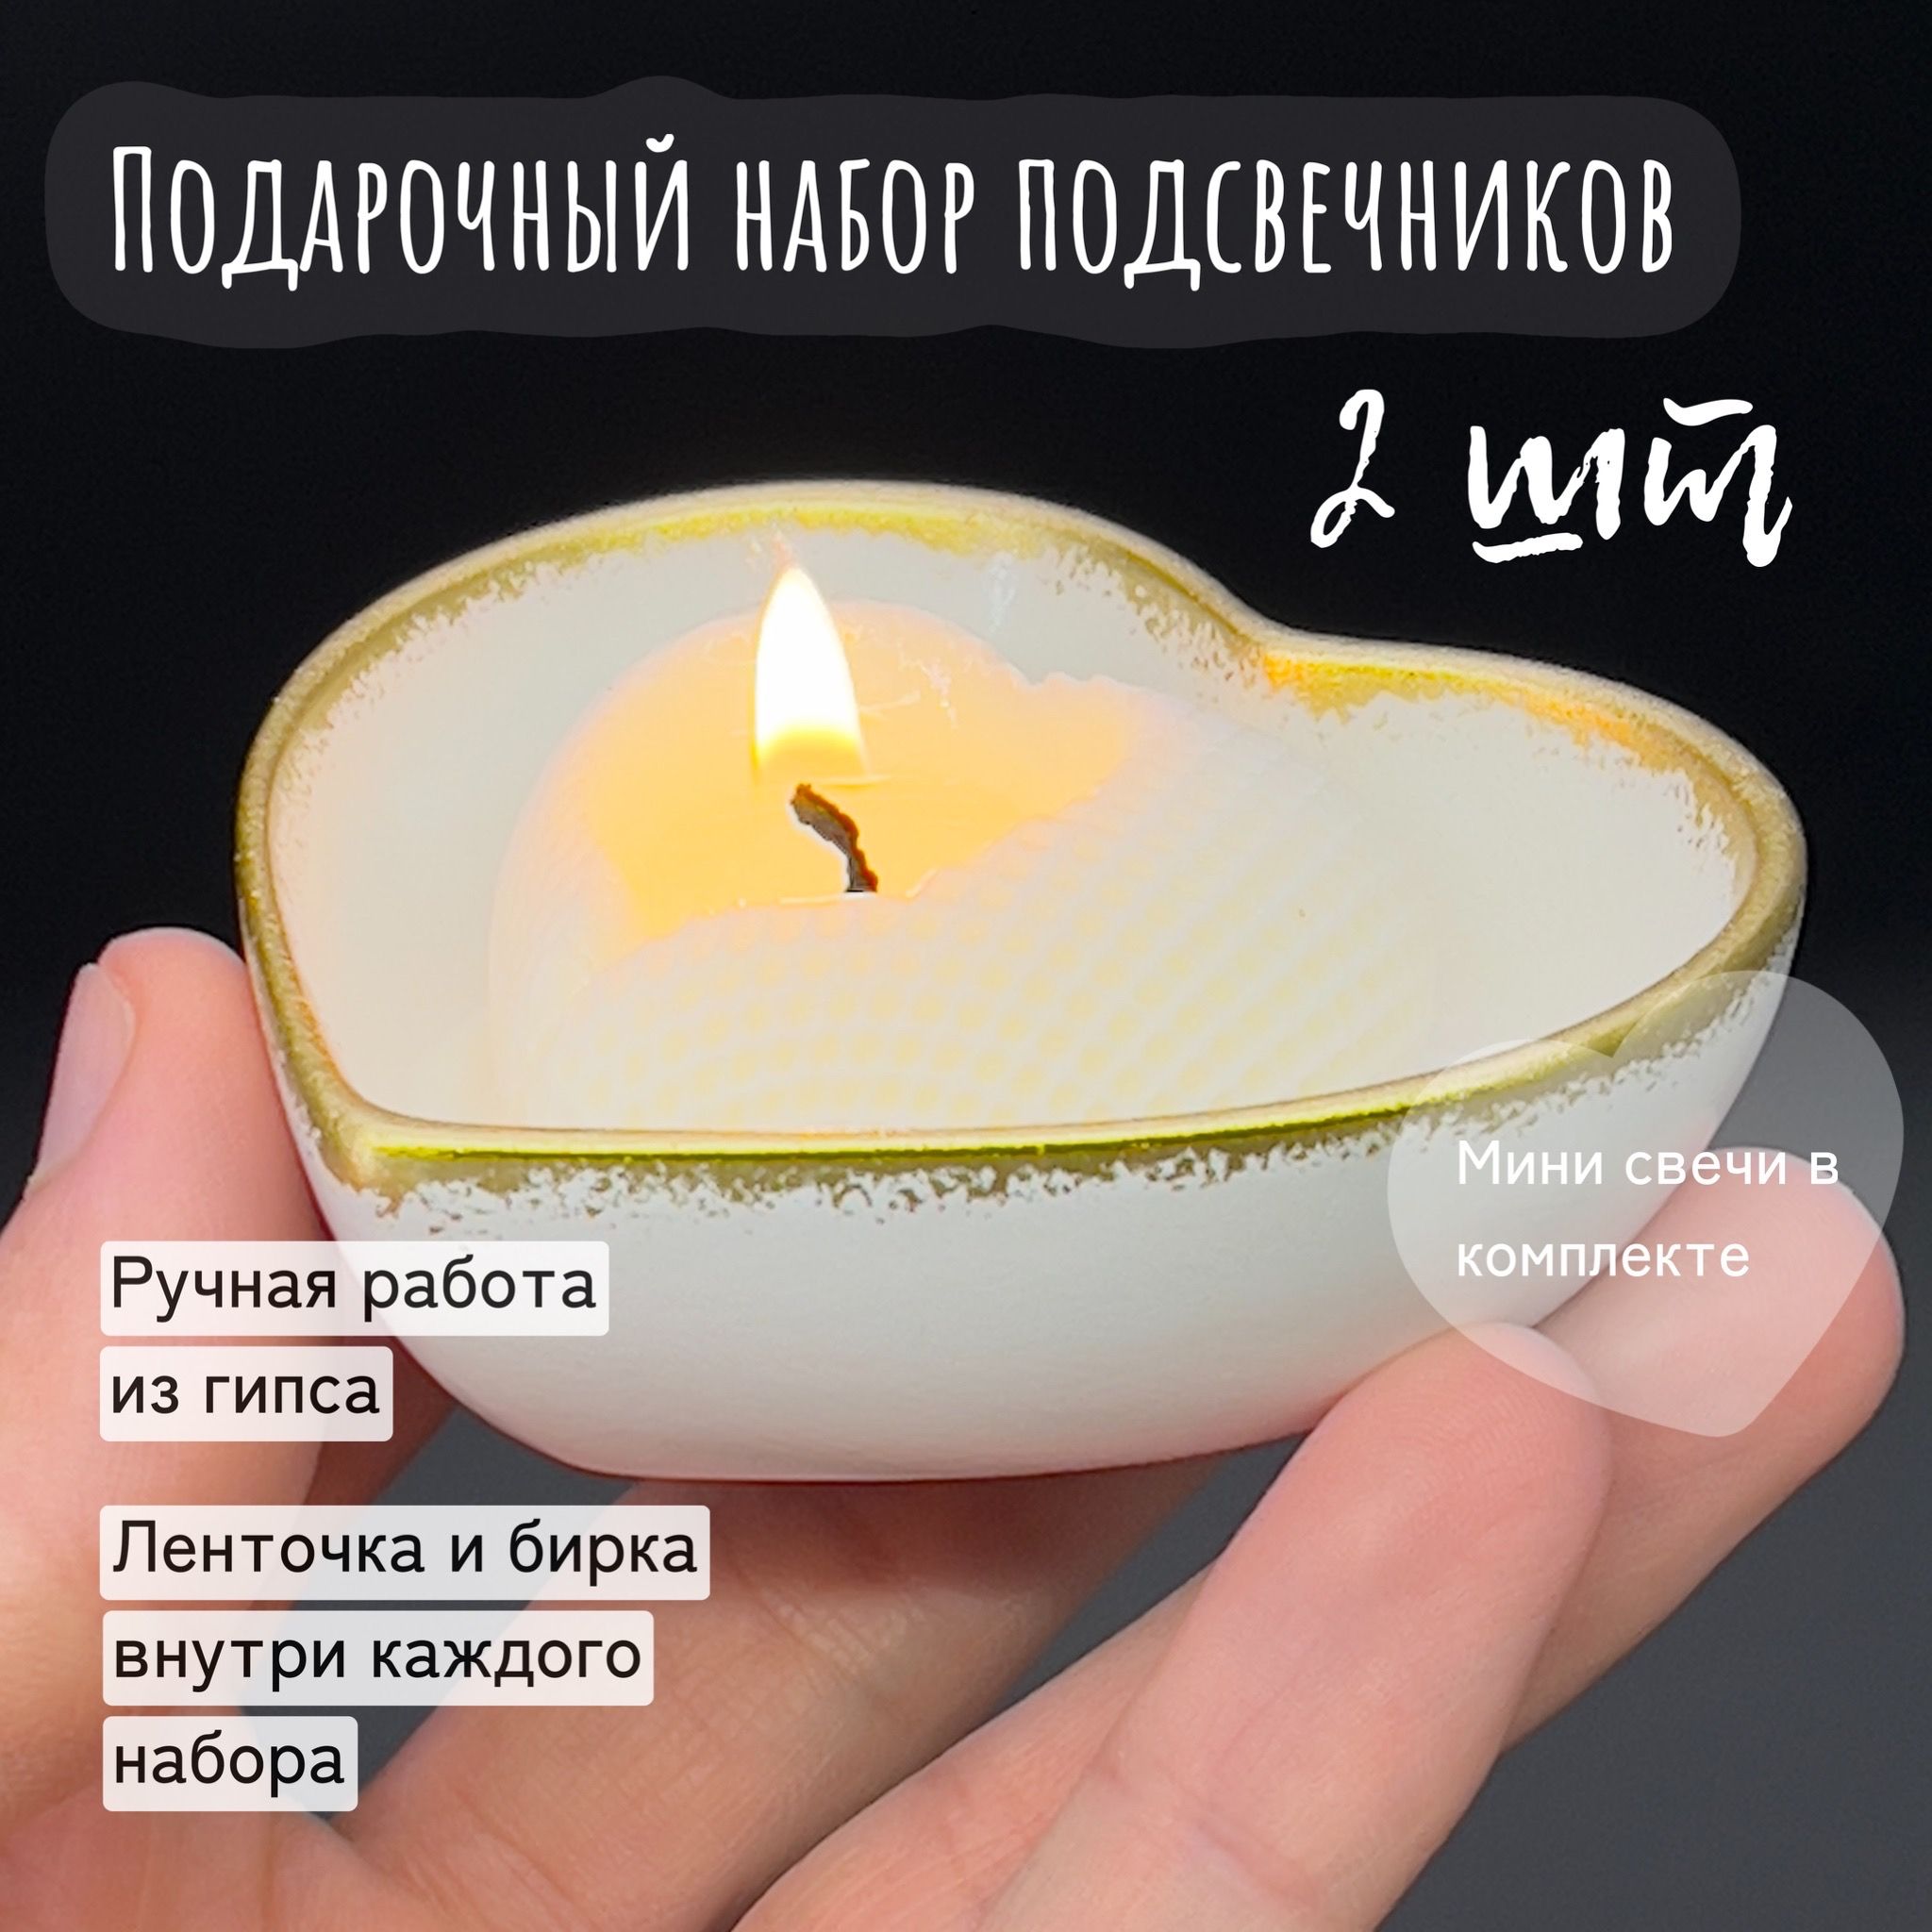 Купить свечи и подсвечники в Минске, цены в интернет-магазине биржевые-записки.рф